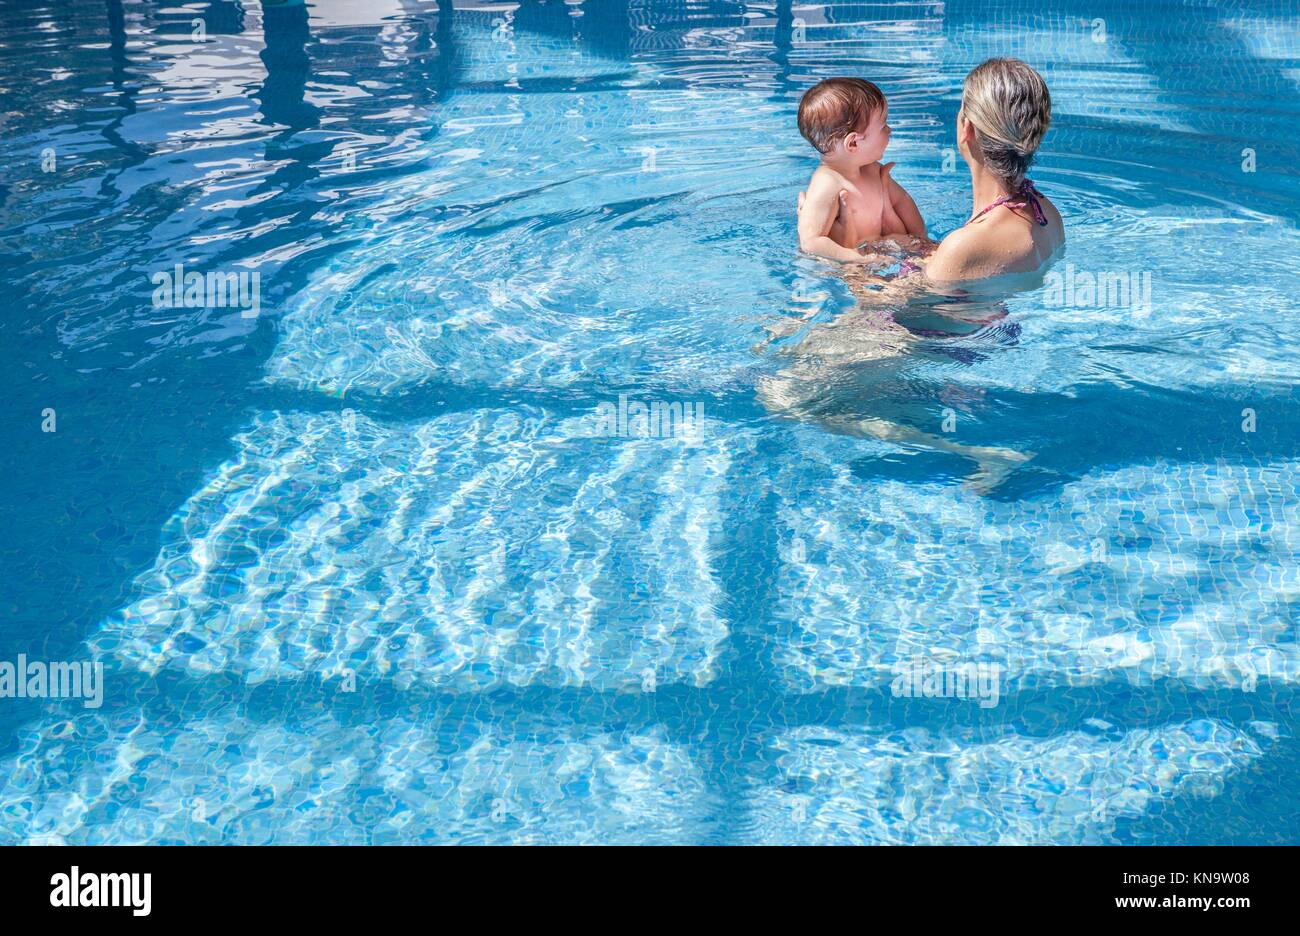 Madre jugando con su bebé en la piscina cubierta. Los niños pueden aprender a nadar durante unas vacaciones en familia. Foto de stock